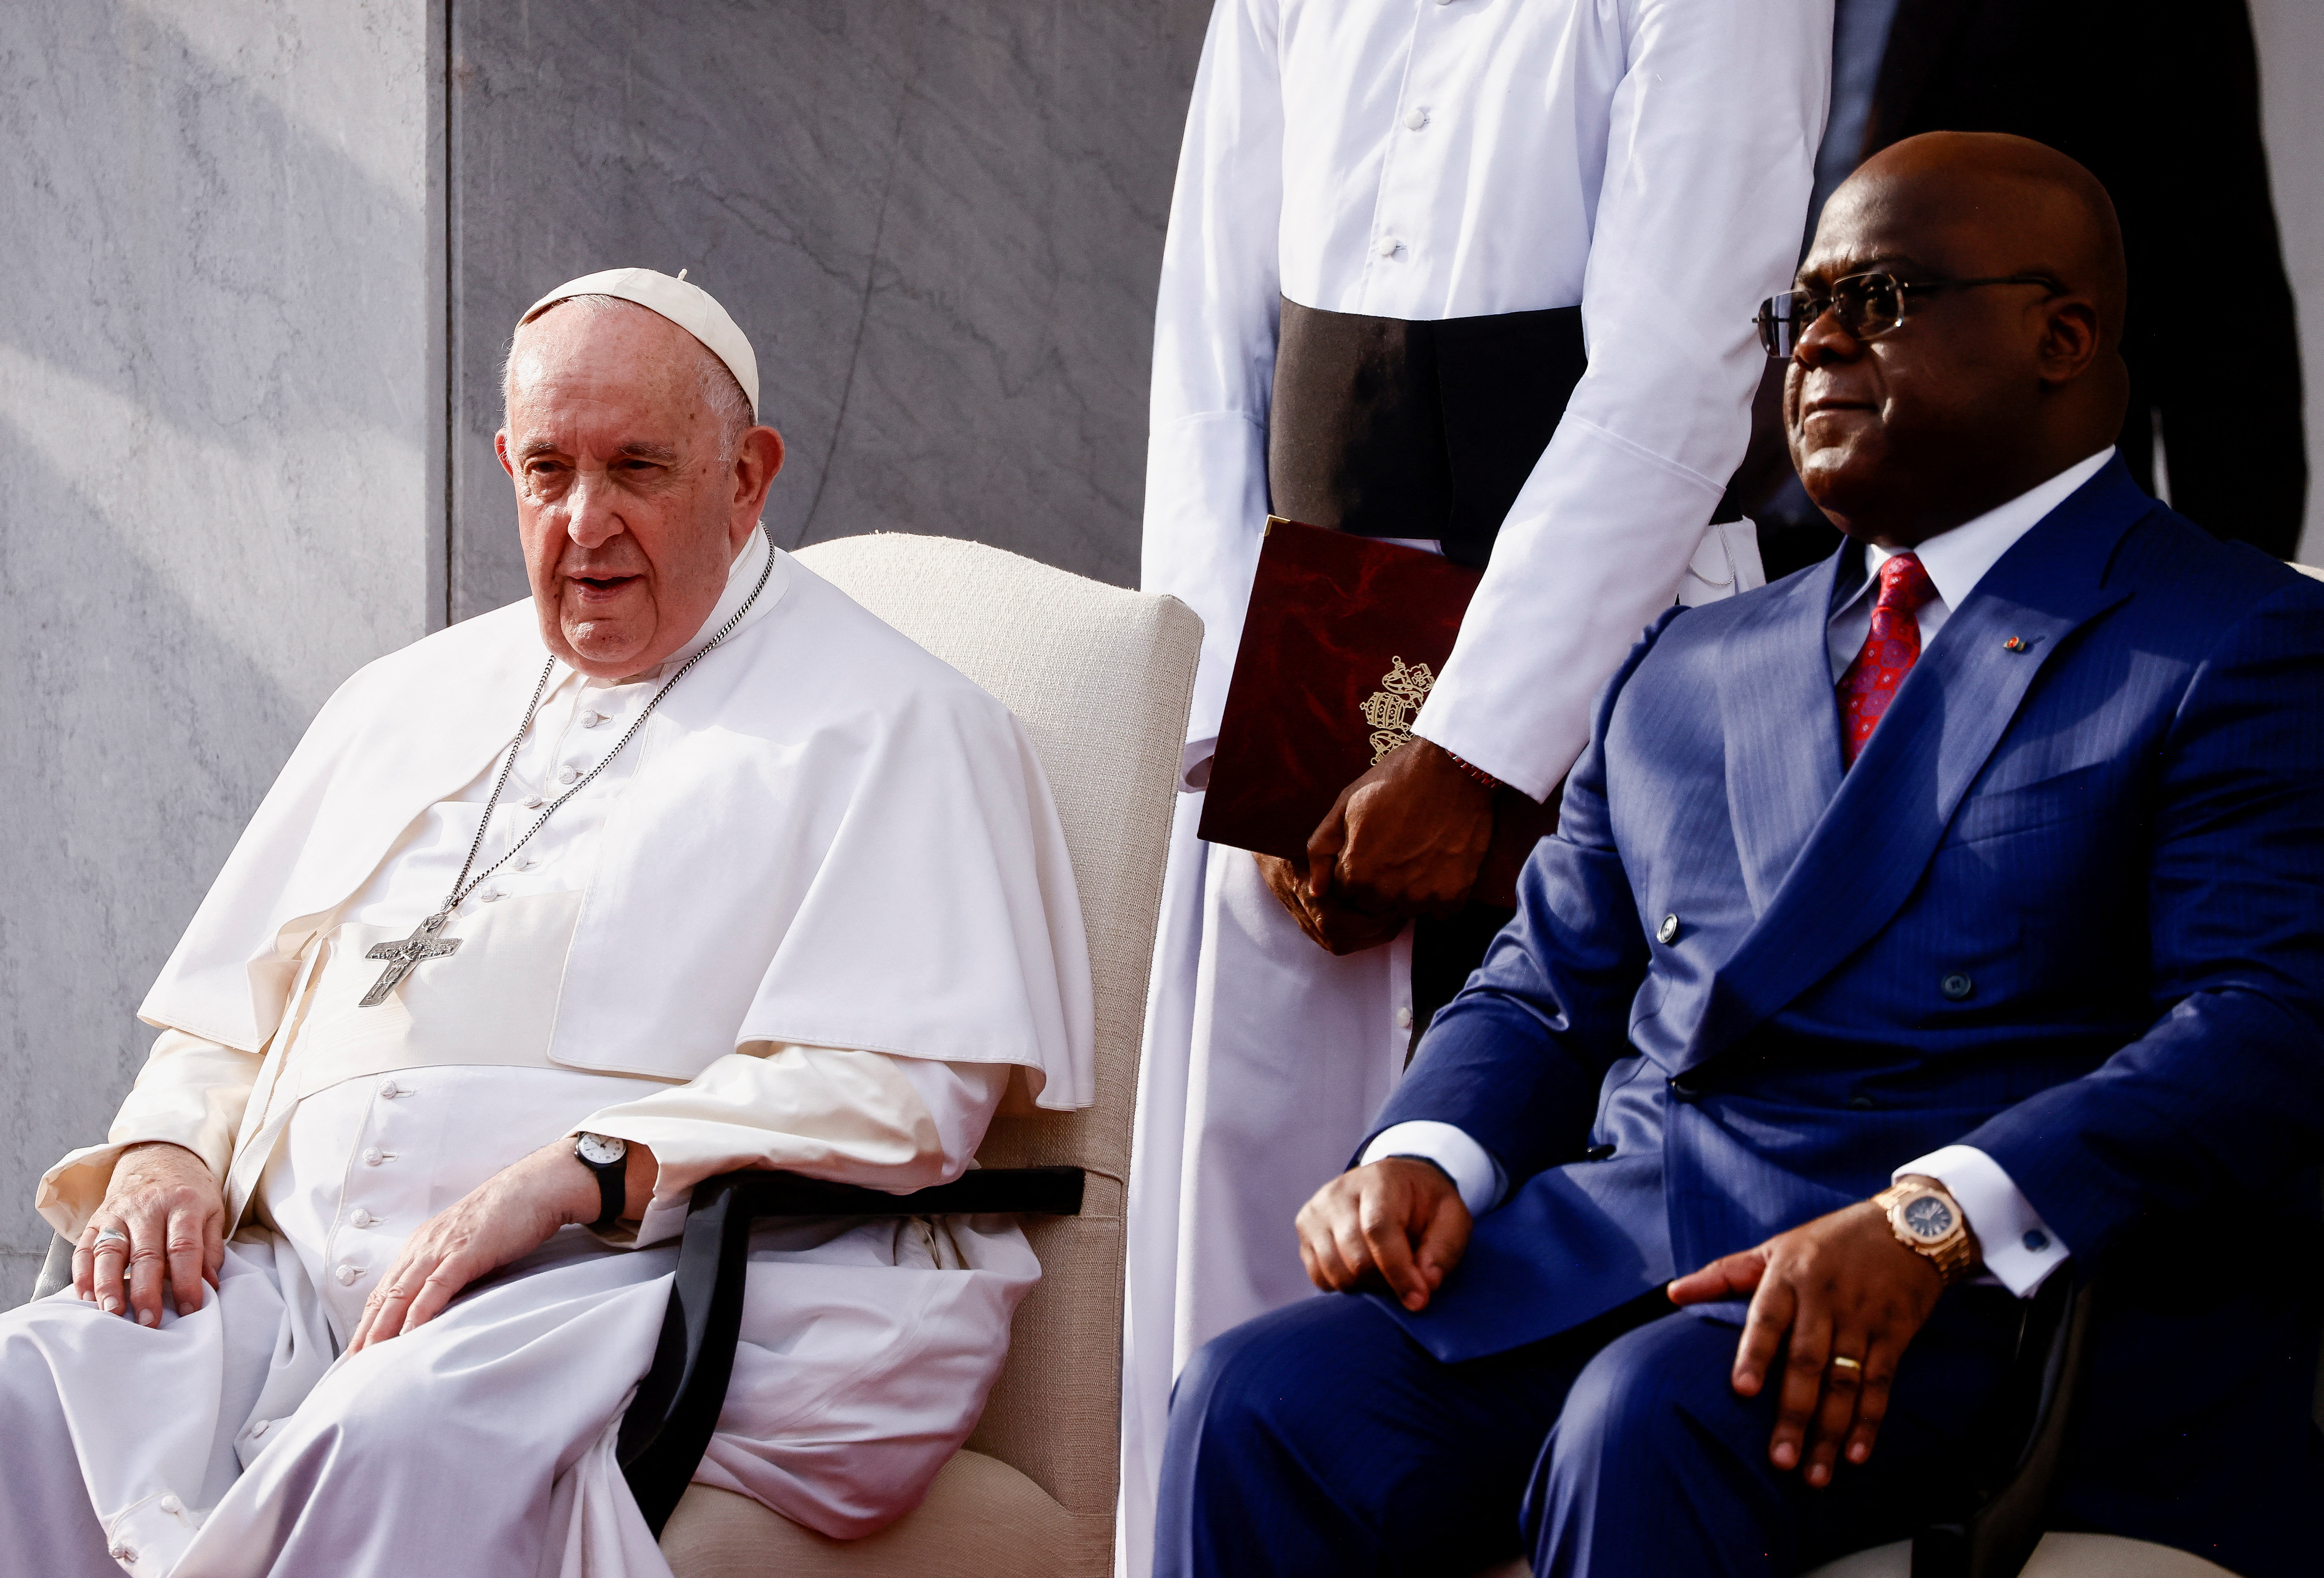 El Papa Francisco se sienta junto al presidente de la República Democrática del Congo, Felix Tshisekedi, mientras asiste a la ceremonia de bienvenida en el Palais de la Nation en el primer día de su viaje apostólico, en Kinshasa, República Democrática del Congo, 31 de enero de 2023. REUTERS/Yara Nardi